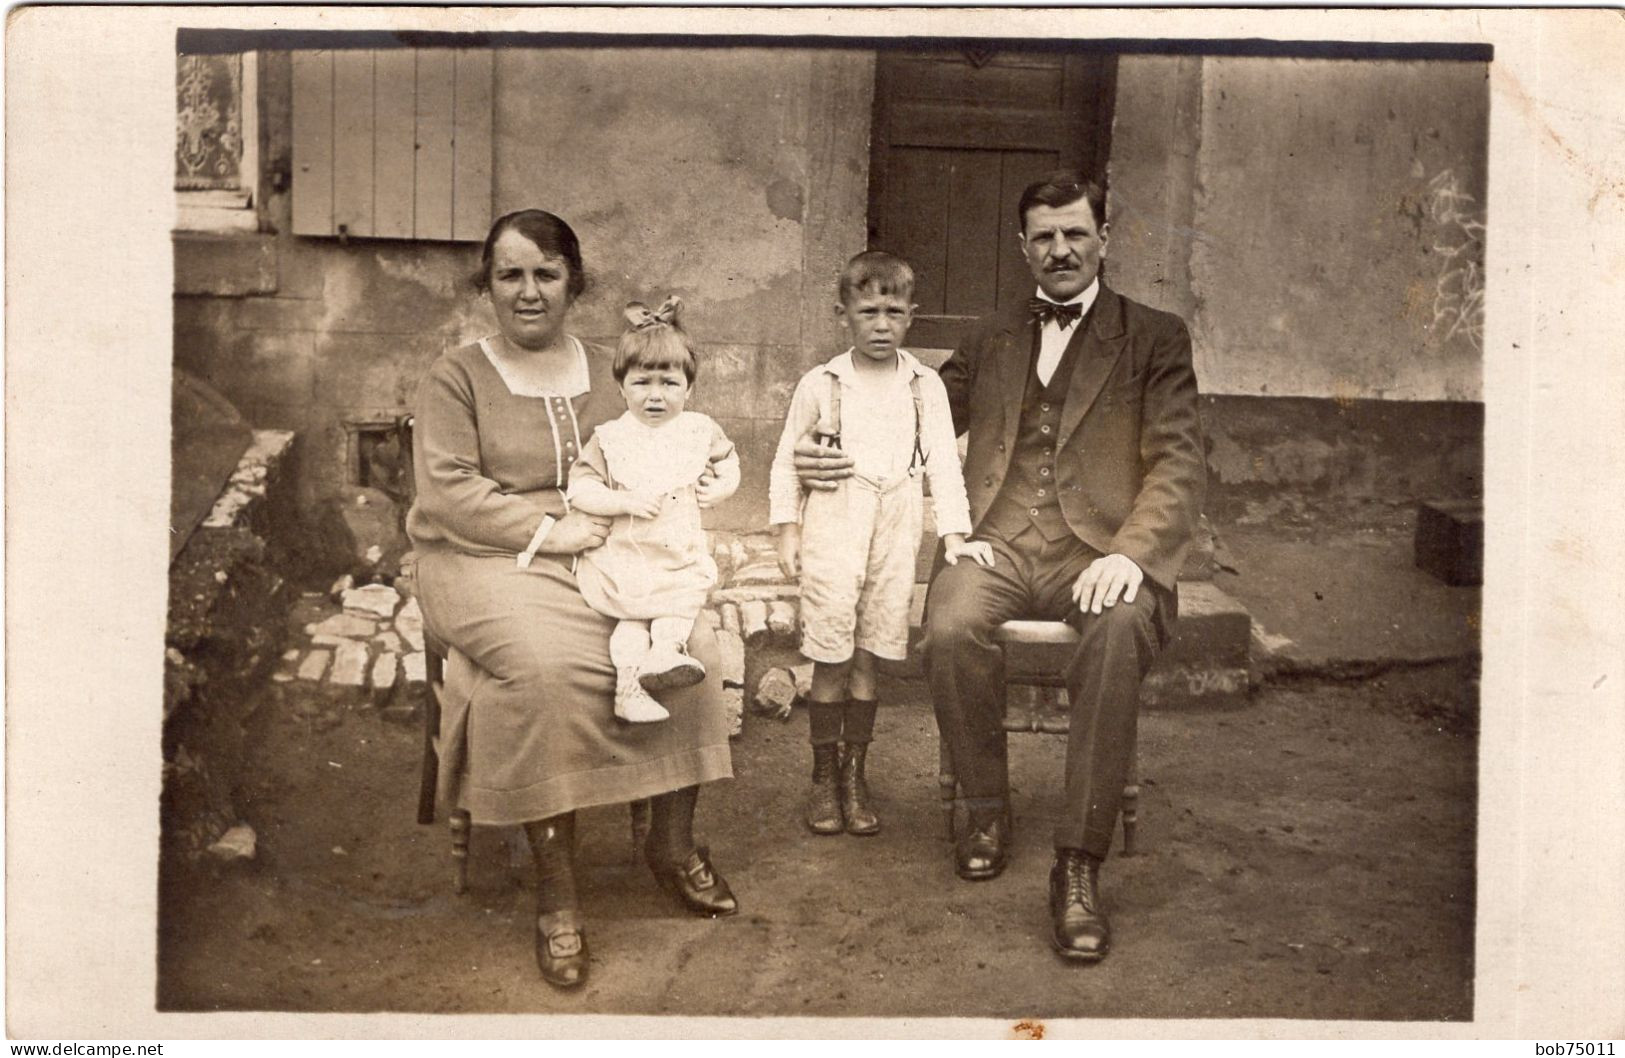 Carte Photo D'une Famille élégante Posant Devant Leurs Maison Vers 1915 - Personas Anónimos